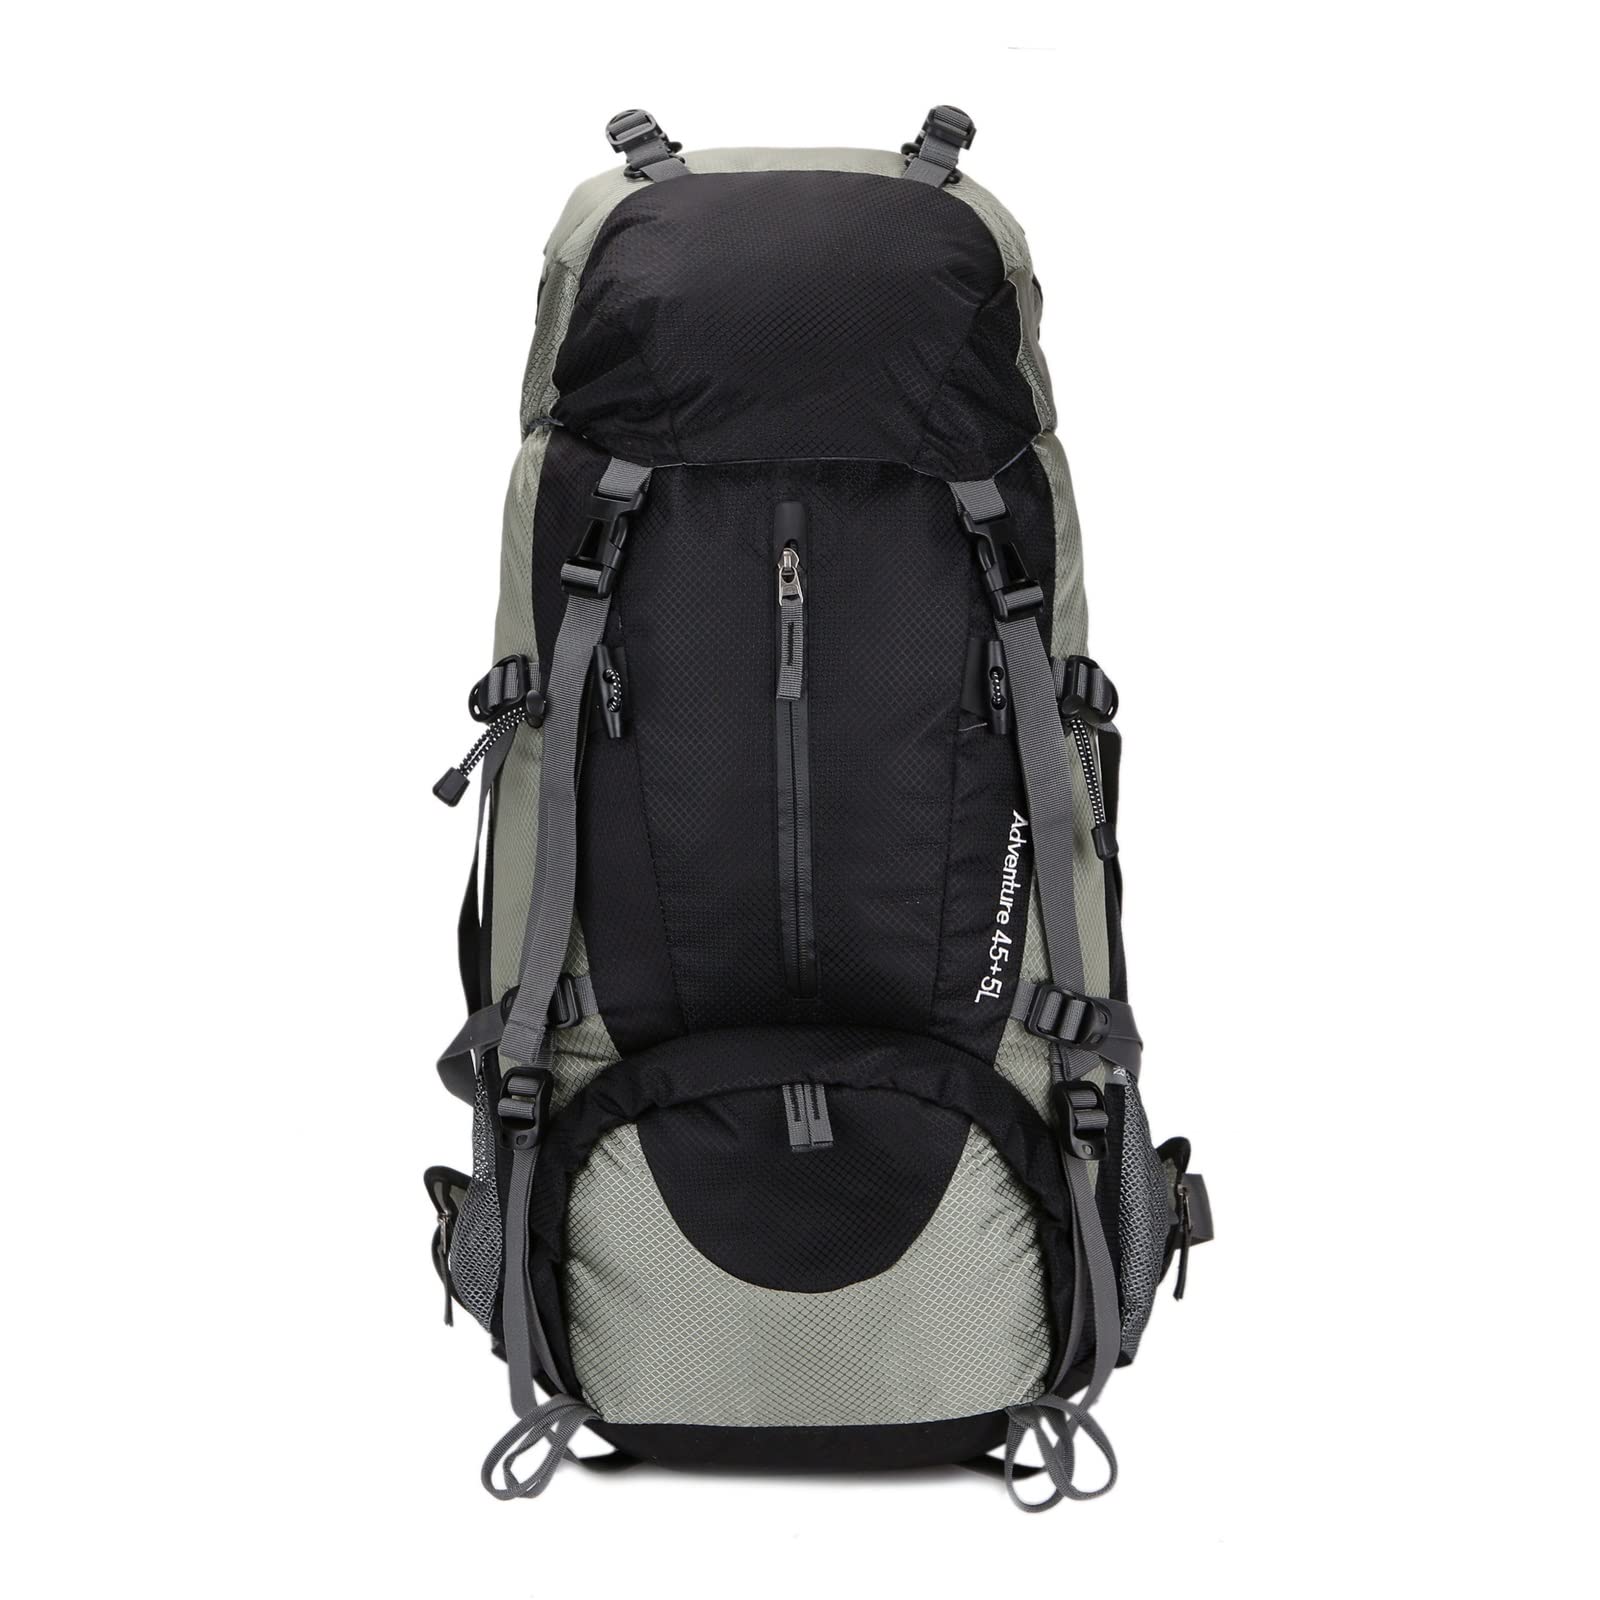 送料無料SEFAX Outdoor Waterproof Lightweight Hiking Daypack with Adjustable Shoulder Straps 45L Camping Hiking Backpack